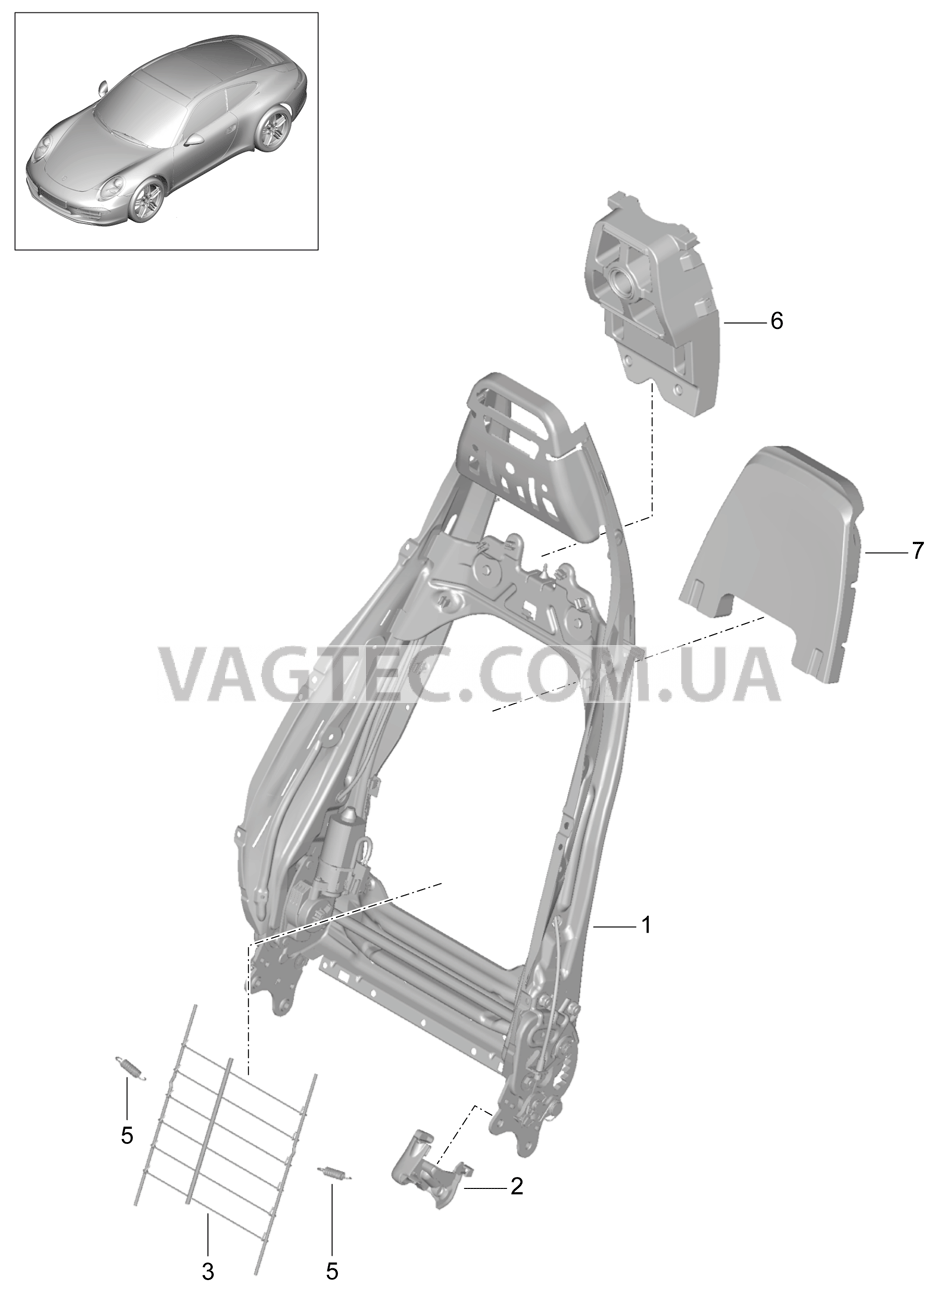 817-021 Каркас спинки, Спортивное сиденье PLUS, Детали для PORSCHE 911.Carrera 2012-2016